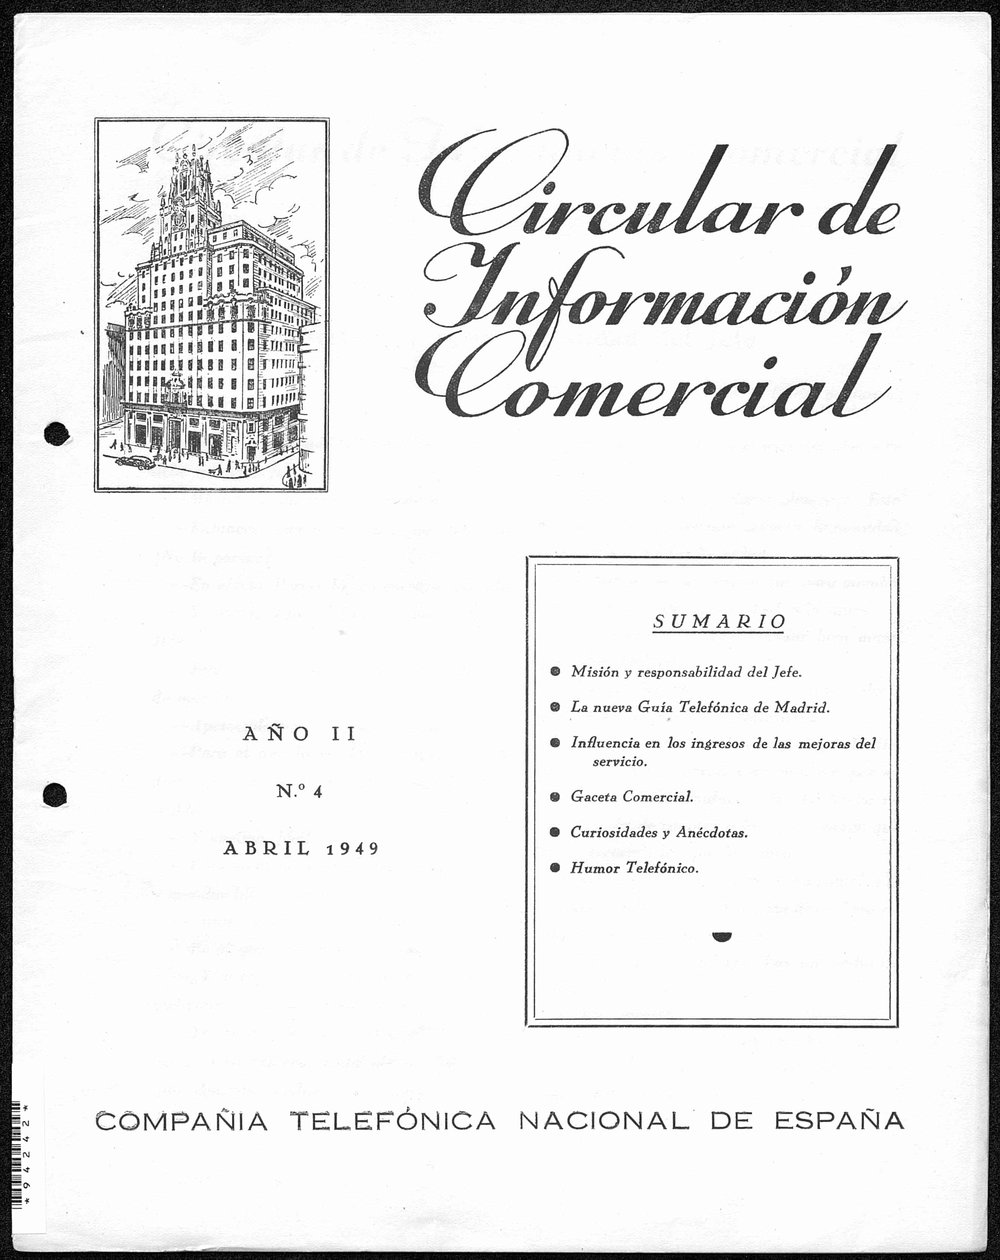 CIRCULAR DE INFORMACIÓN COMERCIAL